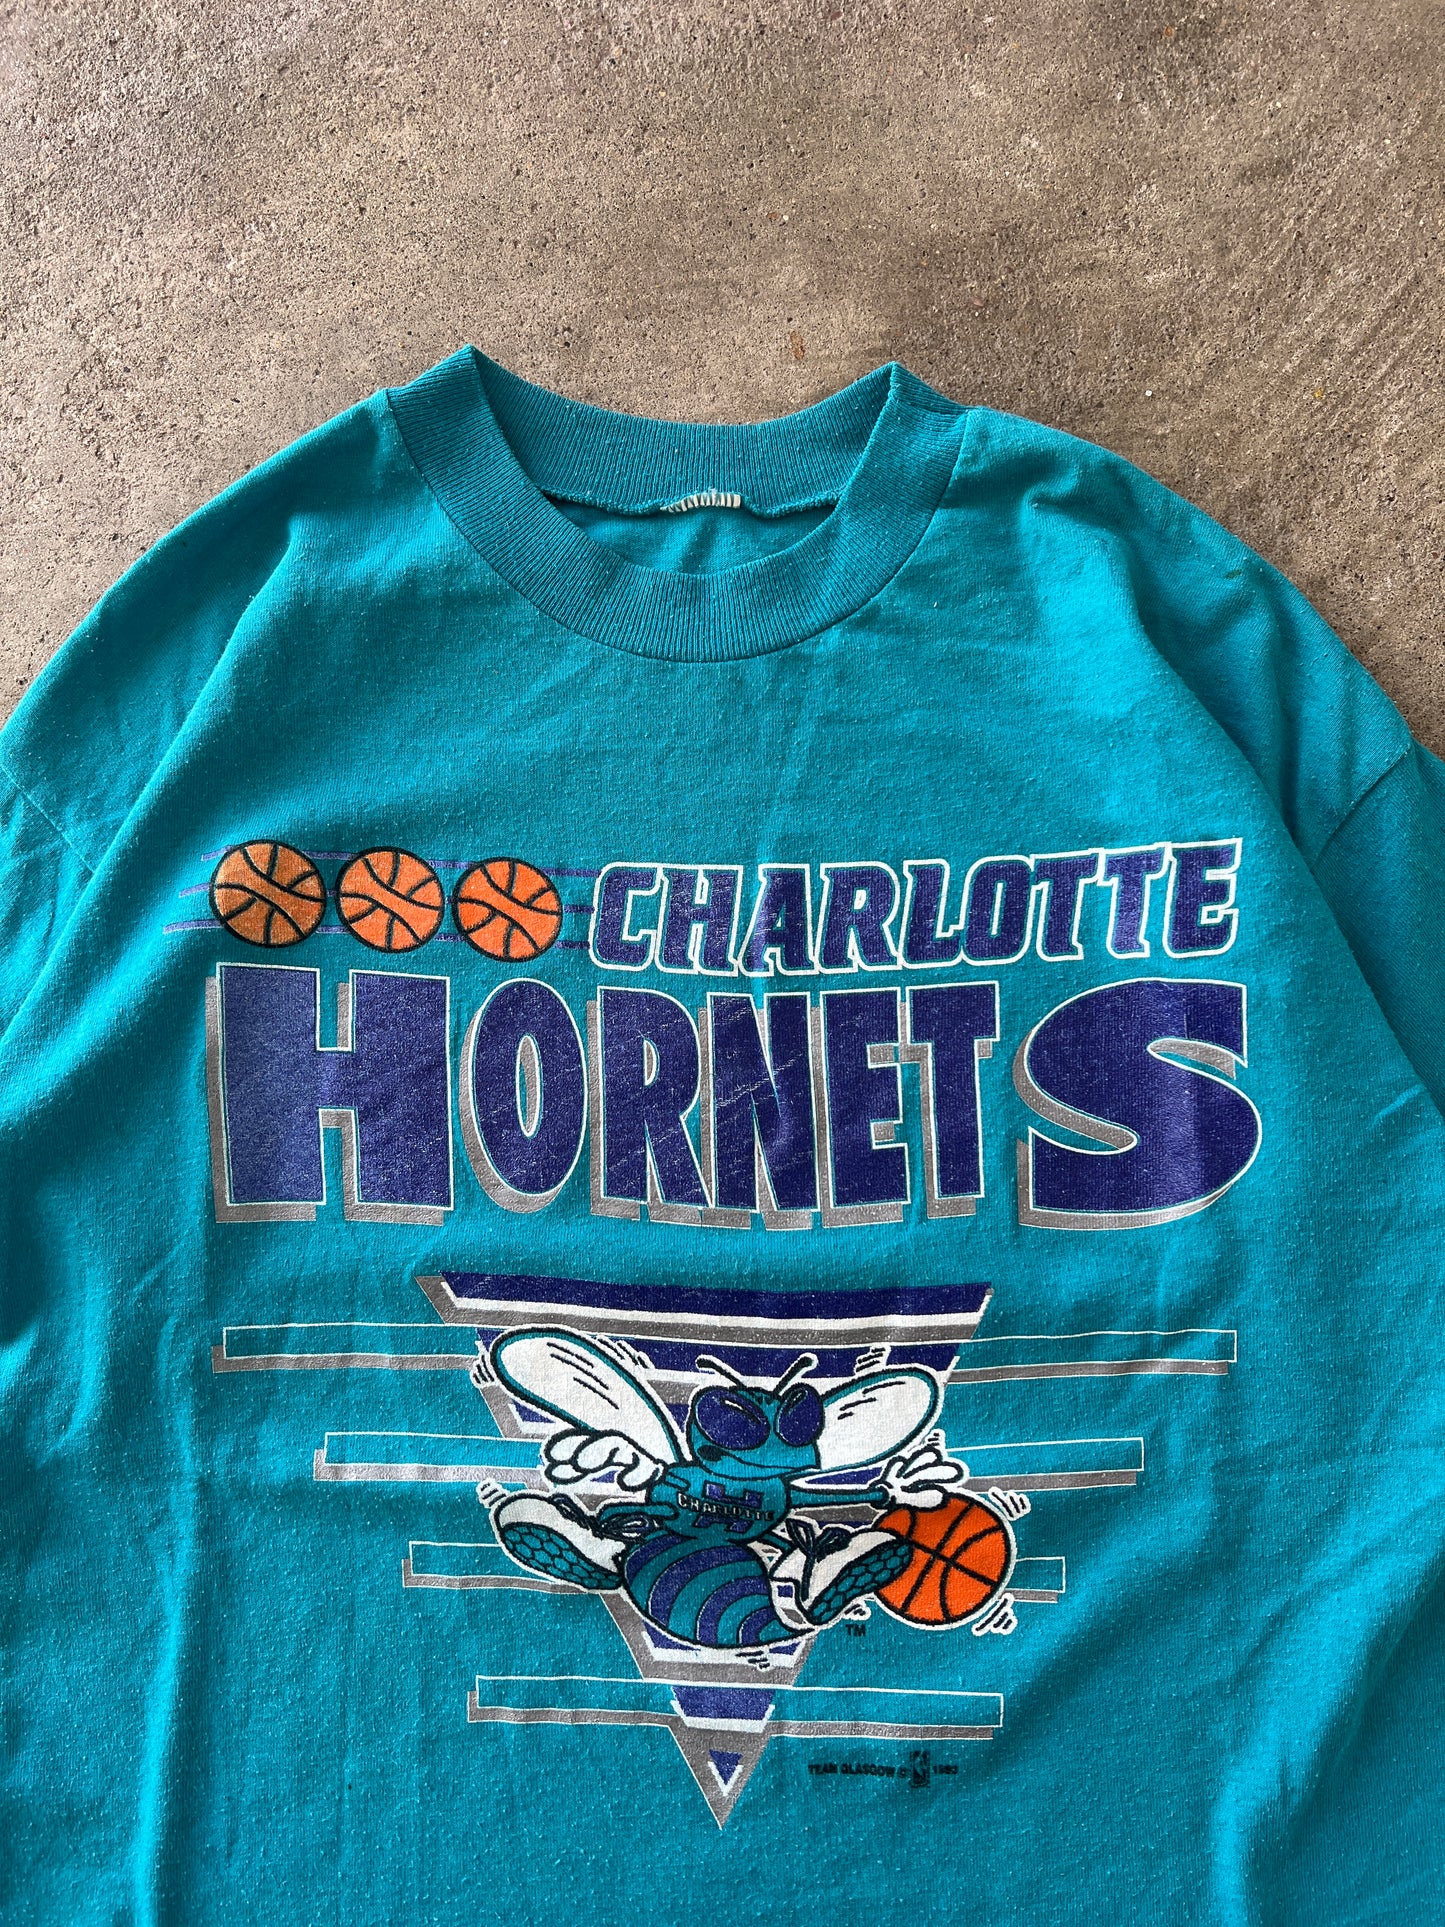 Vintage Charolette Hornets Shirt - M